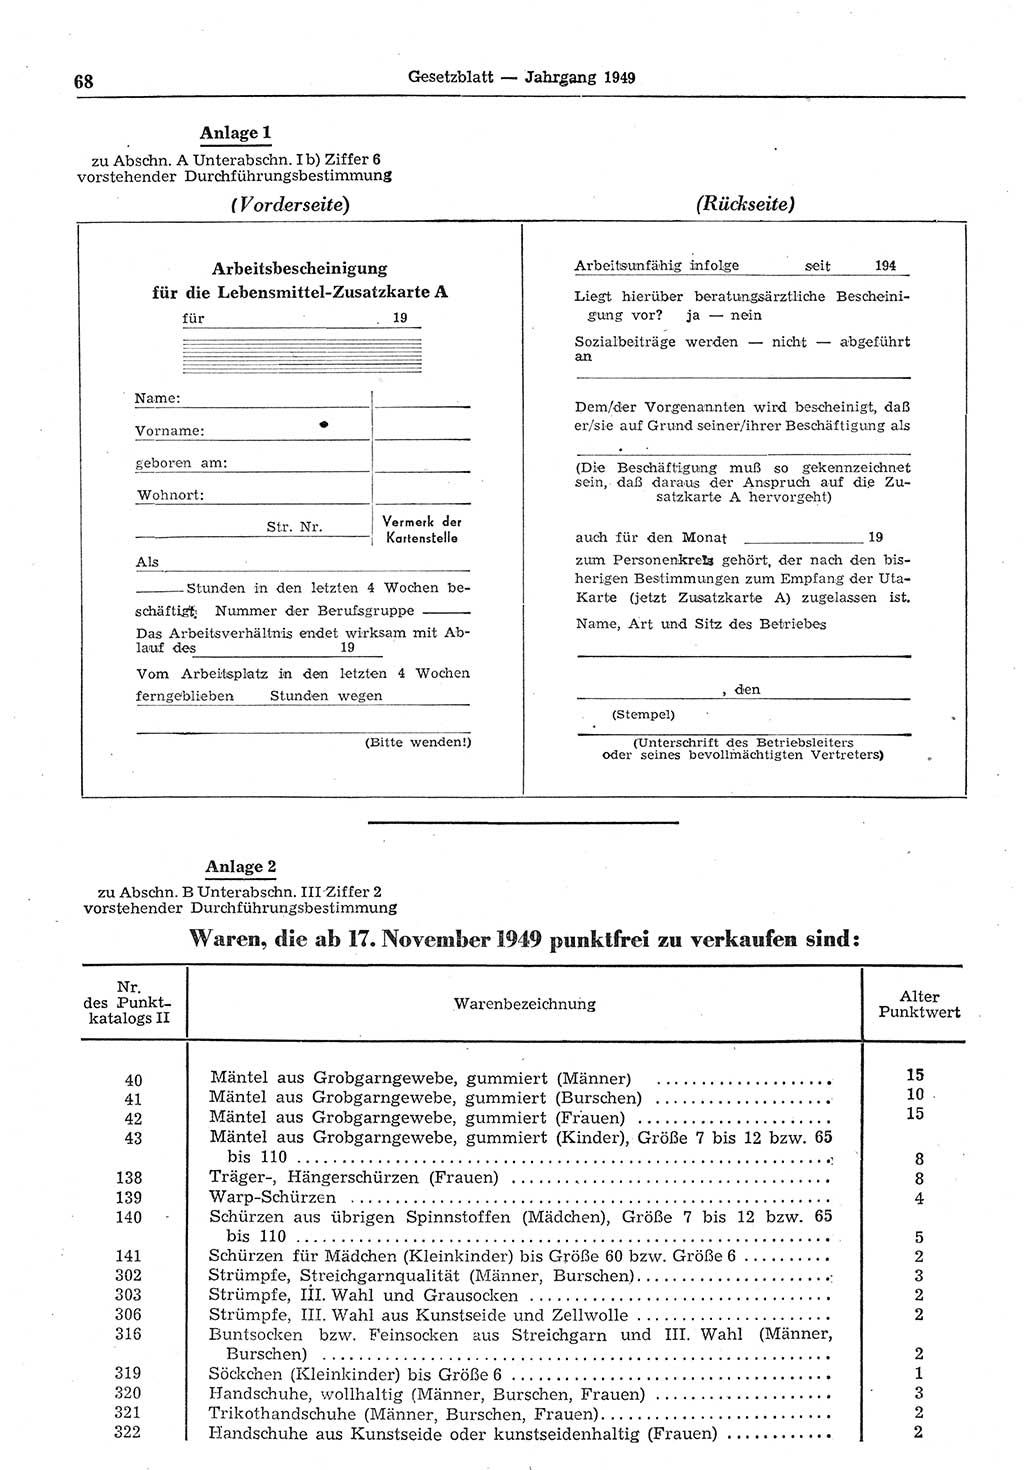 Gesetzblatt (GBl.) der Deutschen Demokratischen Republik (DDR) 1949, Seite 68 (GBl. DDR 1949, S. 68)